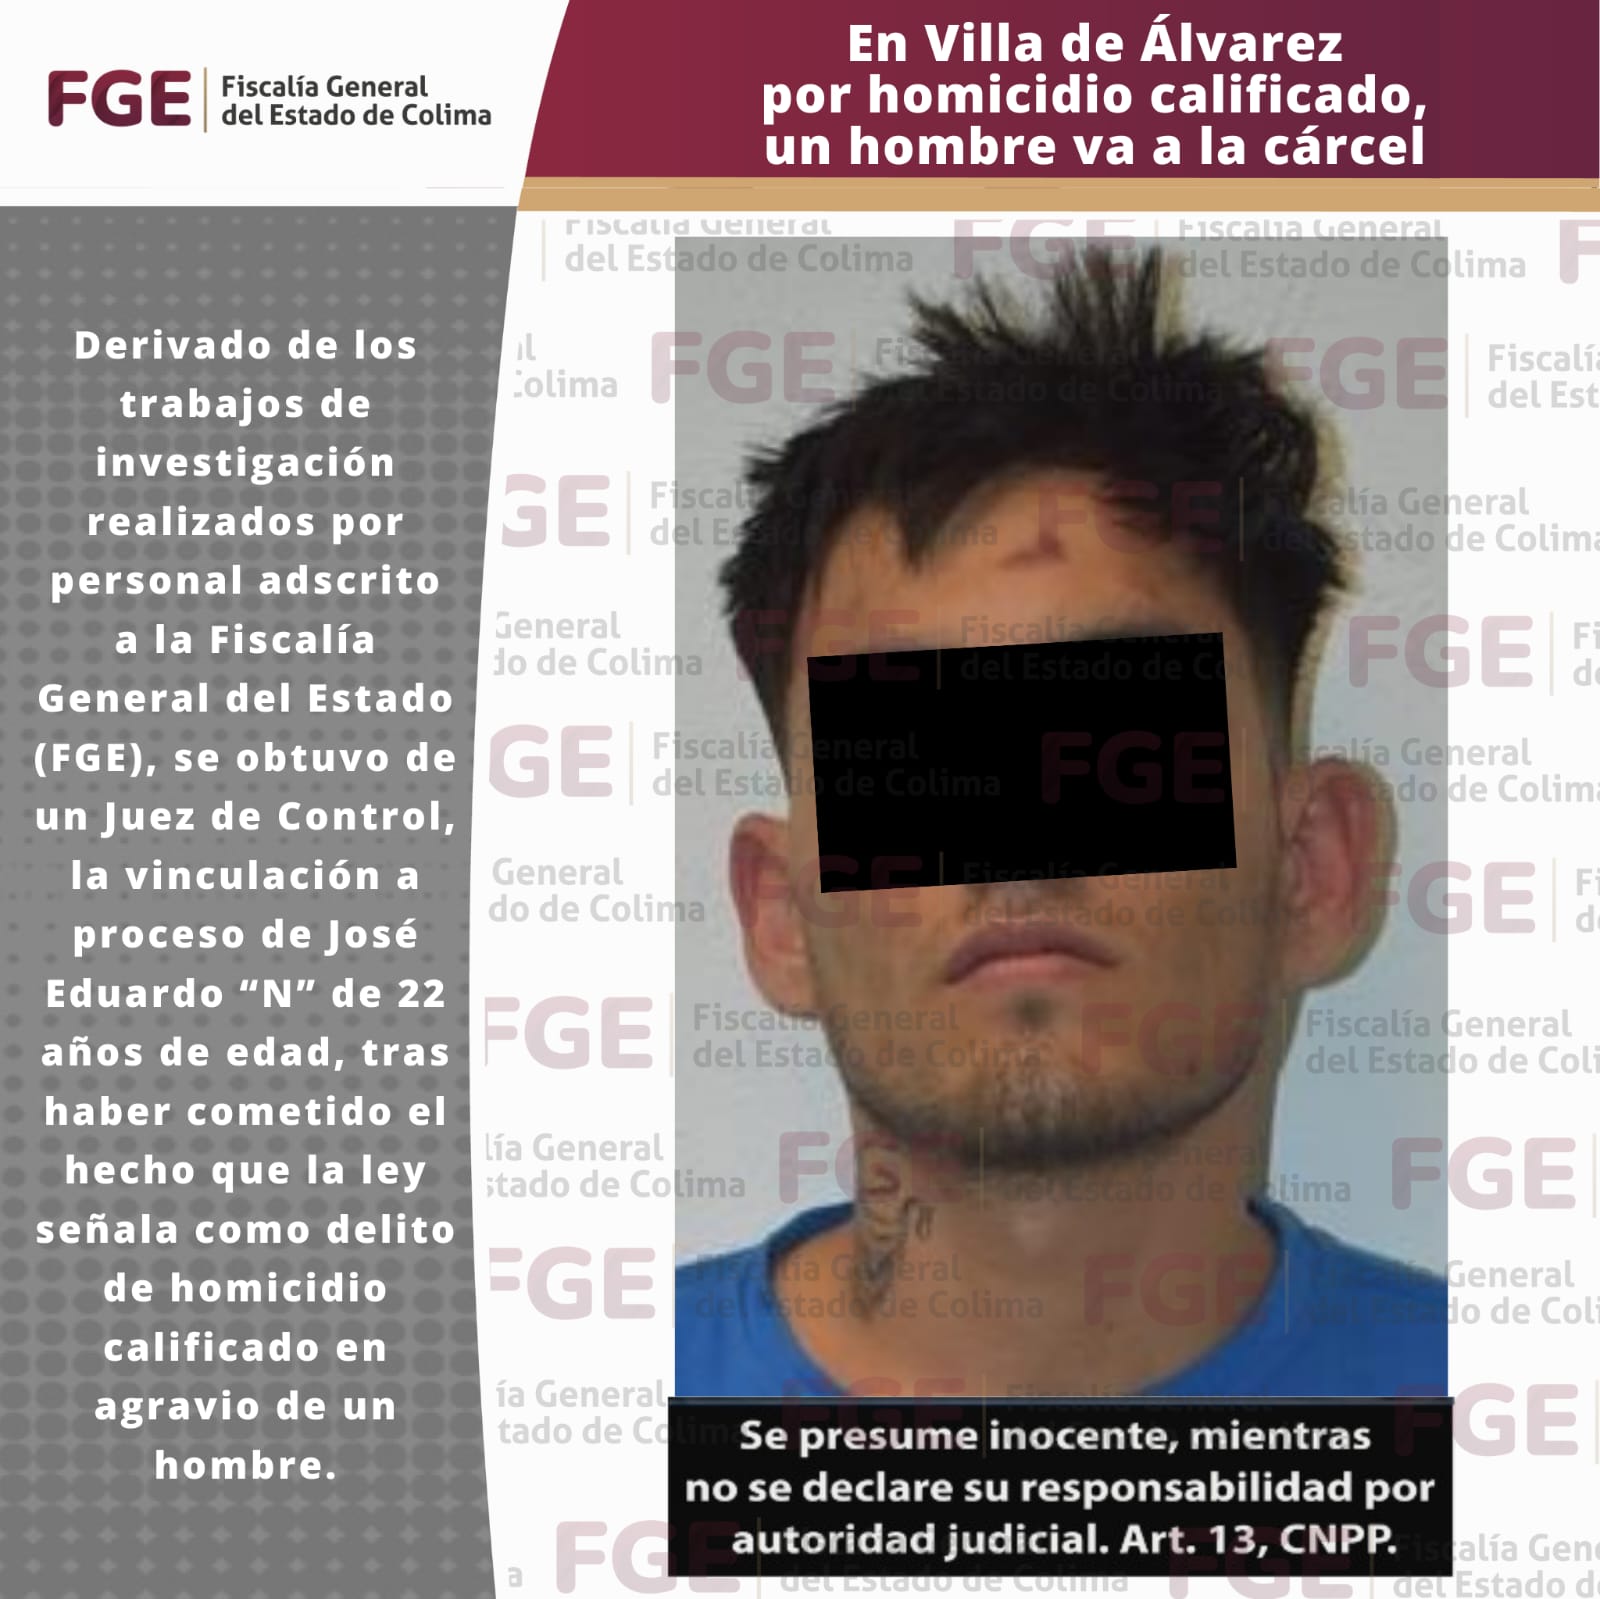 En Villa de Álvarezpor homicidio calificado, un hombre va a la cárcel